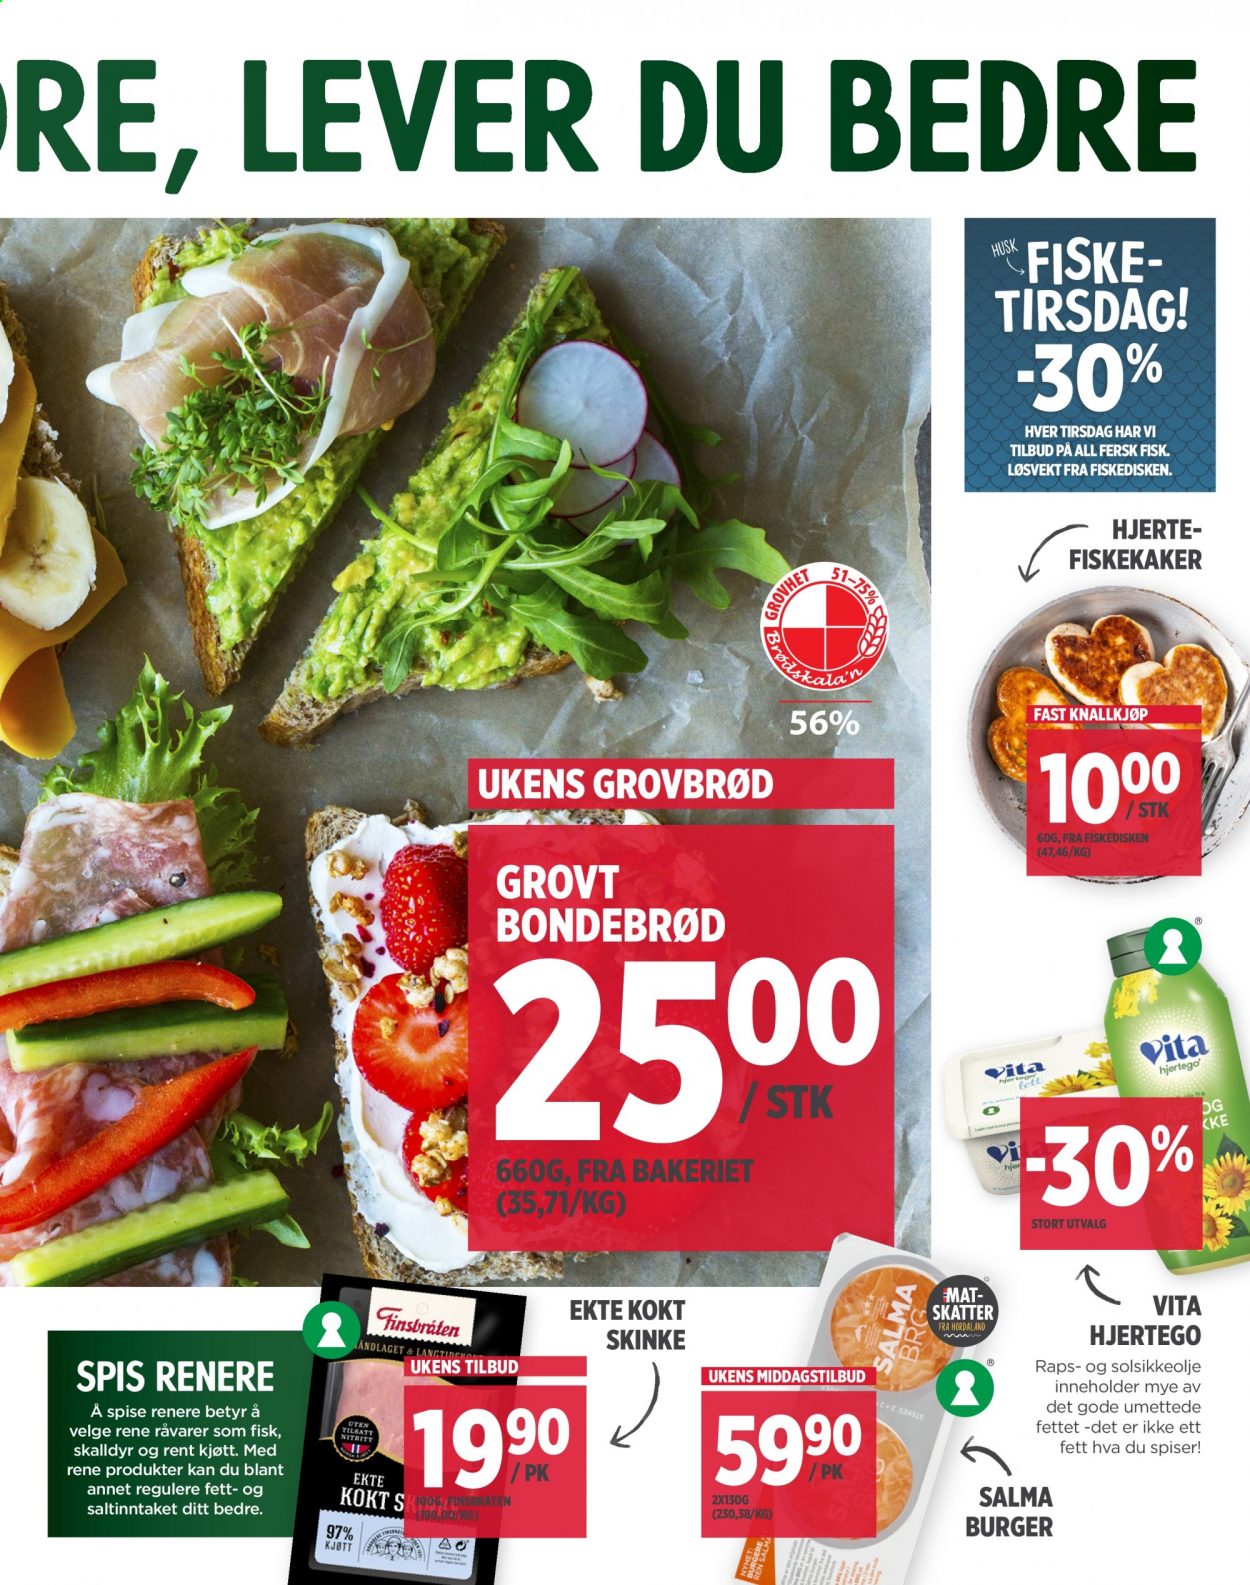 thumbnail - Kundeavis MENY - 18.1.2021 - 23.1.2021 - Produkter fra tilbudsaviser - burger, fisk, fiskekaker, kokt skinke, skinke. Side 5.